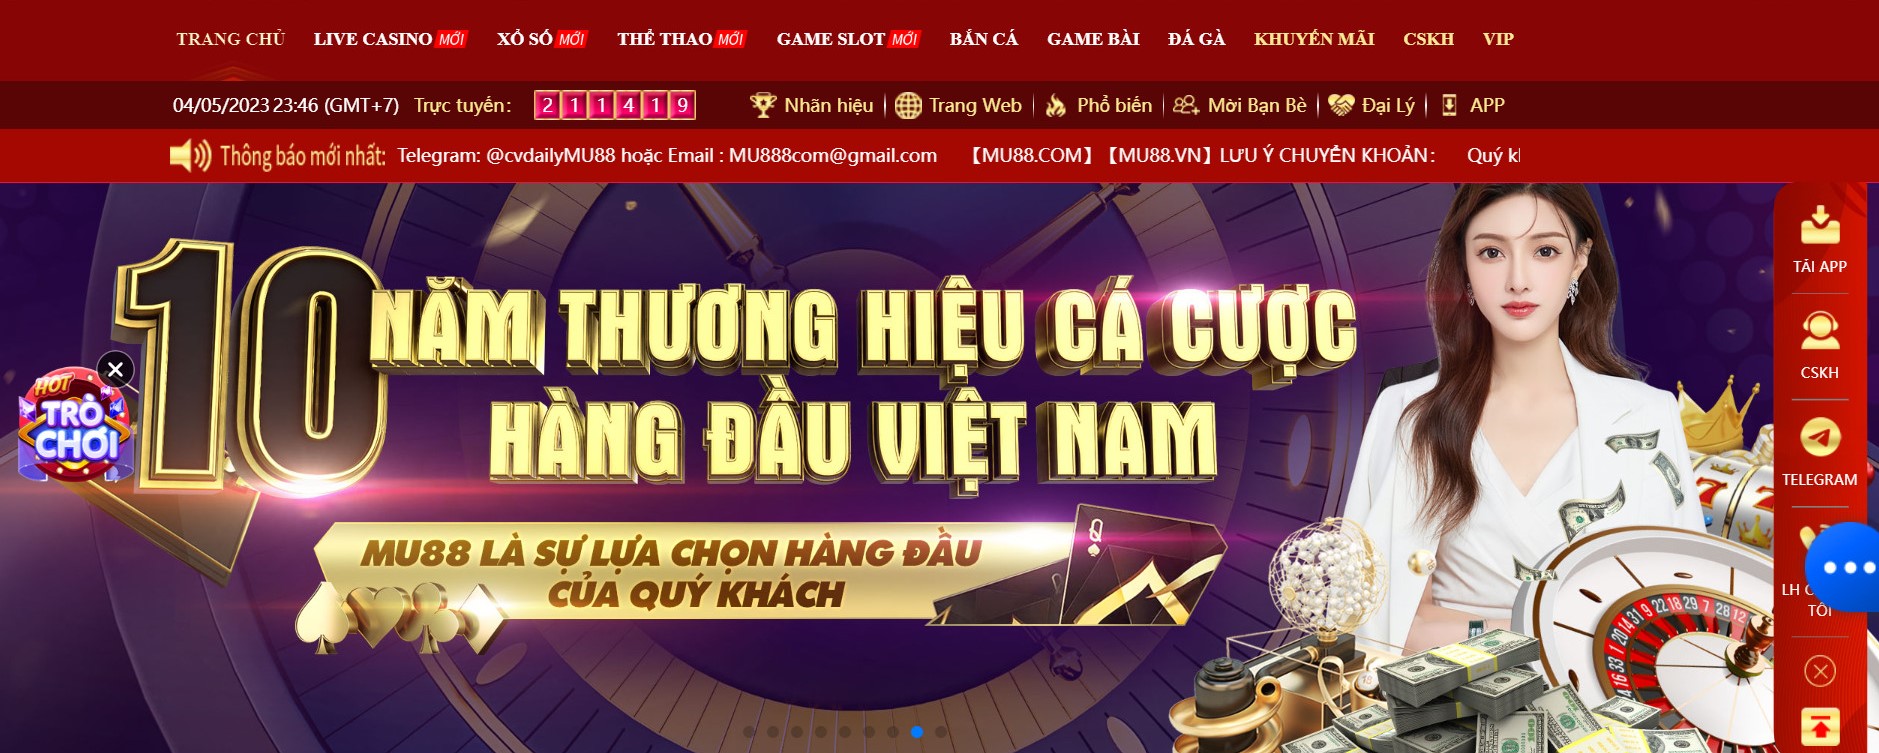 MU88 là nhà cái trực tuyến lớn nhất Việt Nam